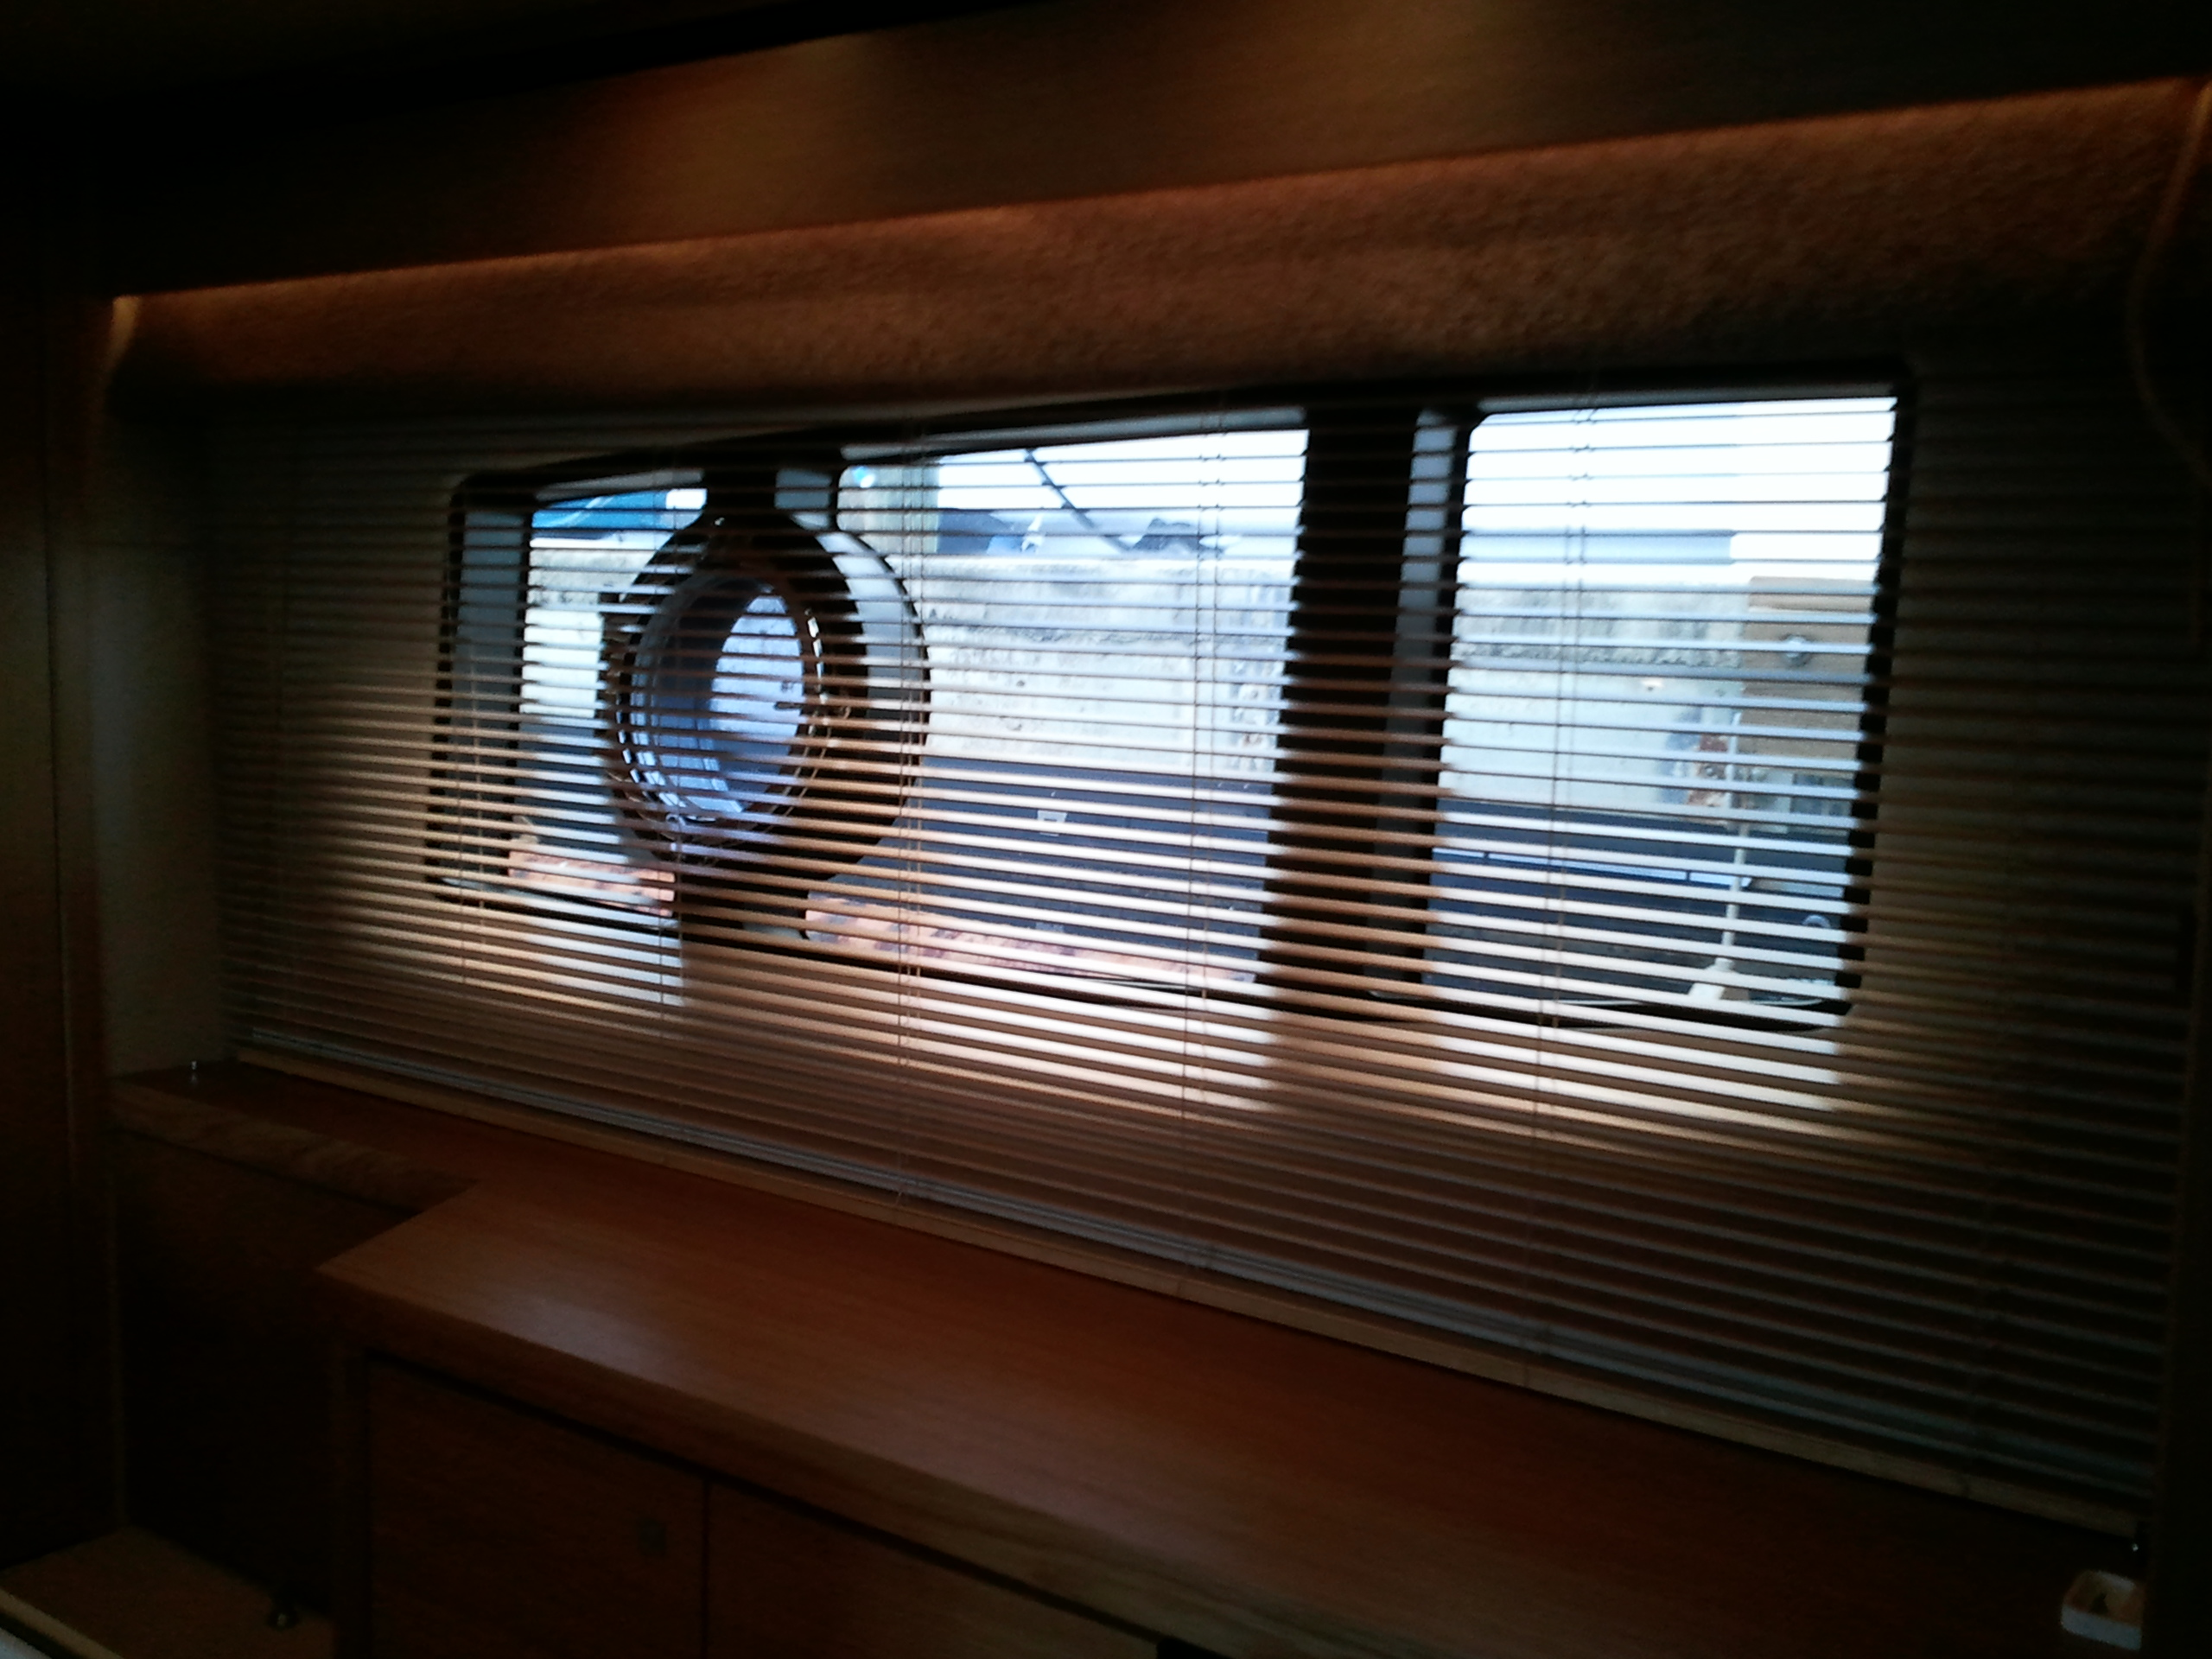 sunseeker yachts, boat blinds, sunseeker blinds, sunseeker shades, sunseeker window treatments, yacht window treatments, 